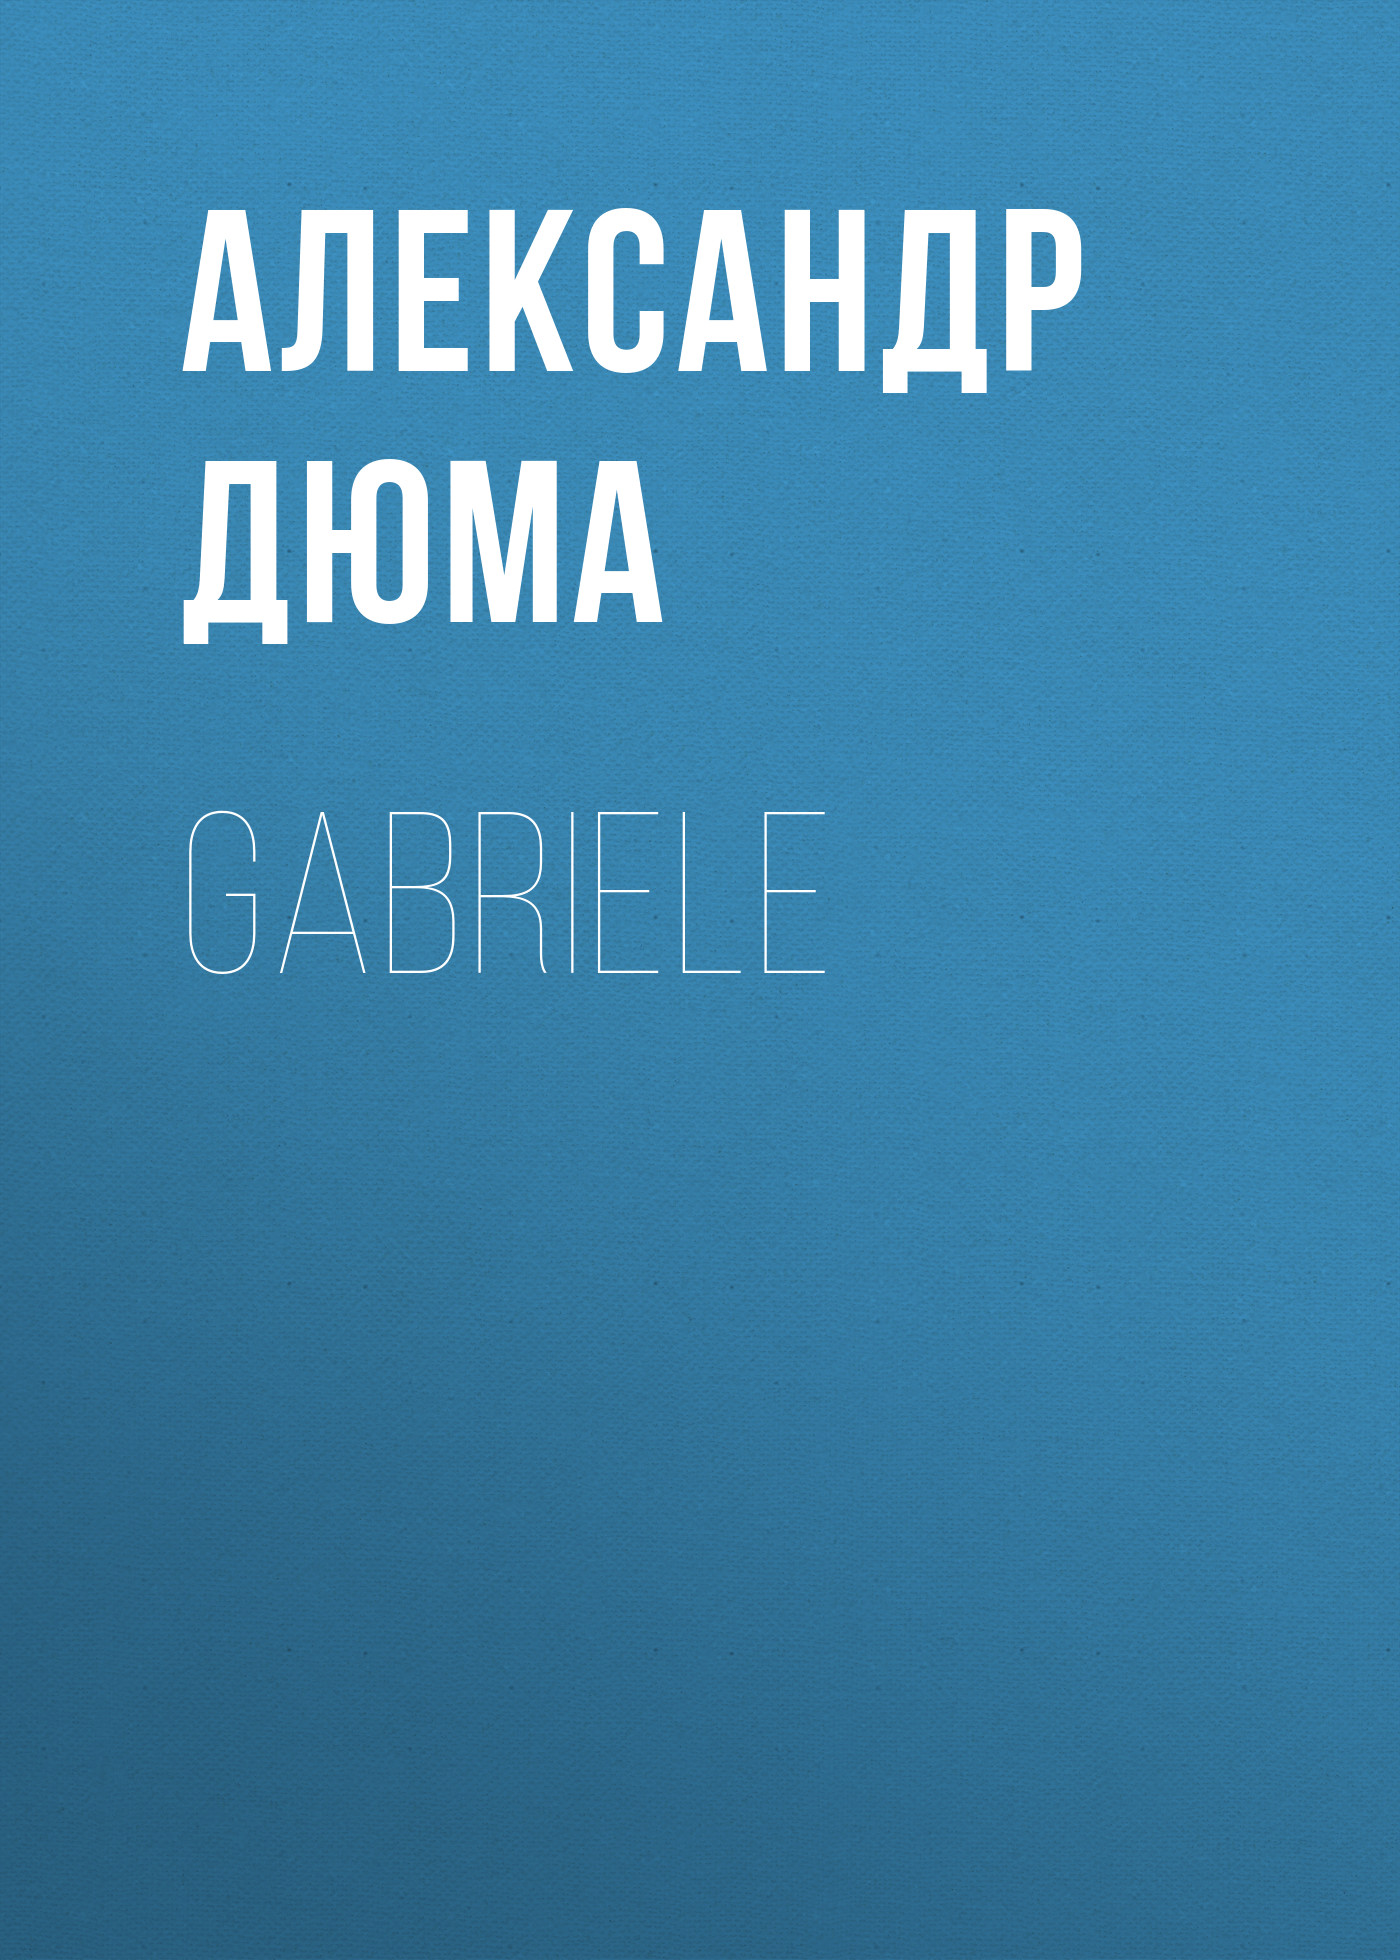 Книга Gabriele из серии , созданная Alexandre Dumas der Ältere, может относится к жанру Зарубежная классика. Стоимость электронной книги Gabriele с идентификатором 48631900 составляет 0 руб.